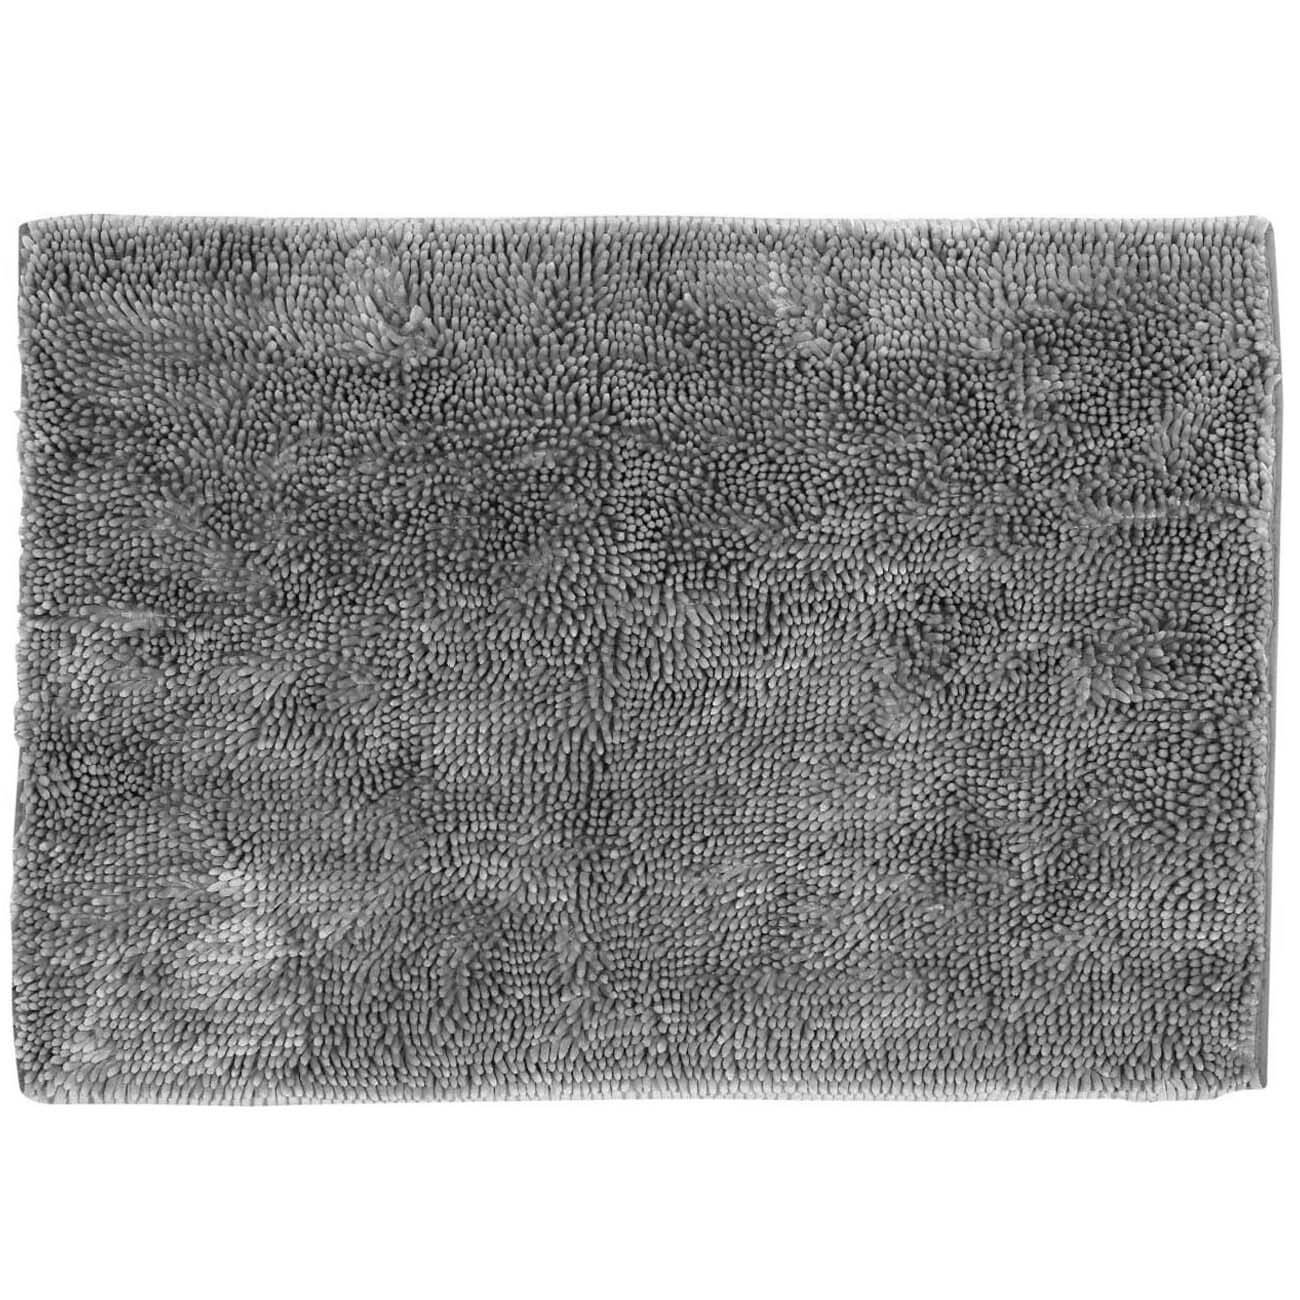 Коврик, 65х100 см, противоскользящий, полиэстер, серый, Fluffy сумка 12” samsonite полиэстер серый 41u 08 002